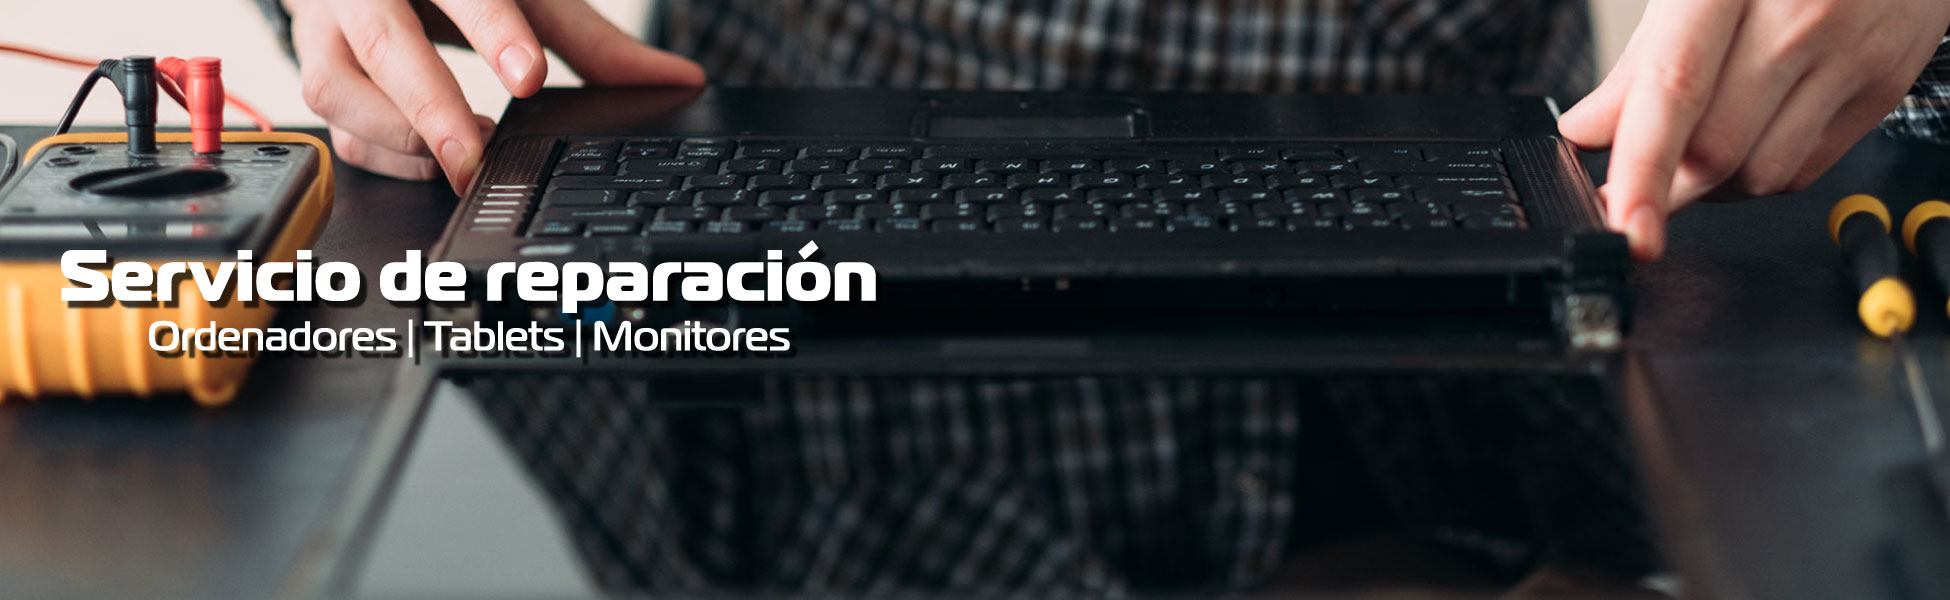 Servicio de reparación de ordenadores, tablets y monitores en Málaga